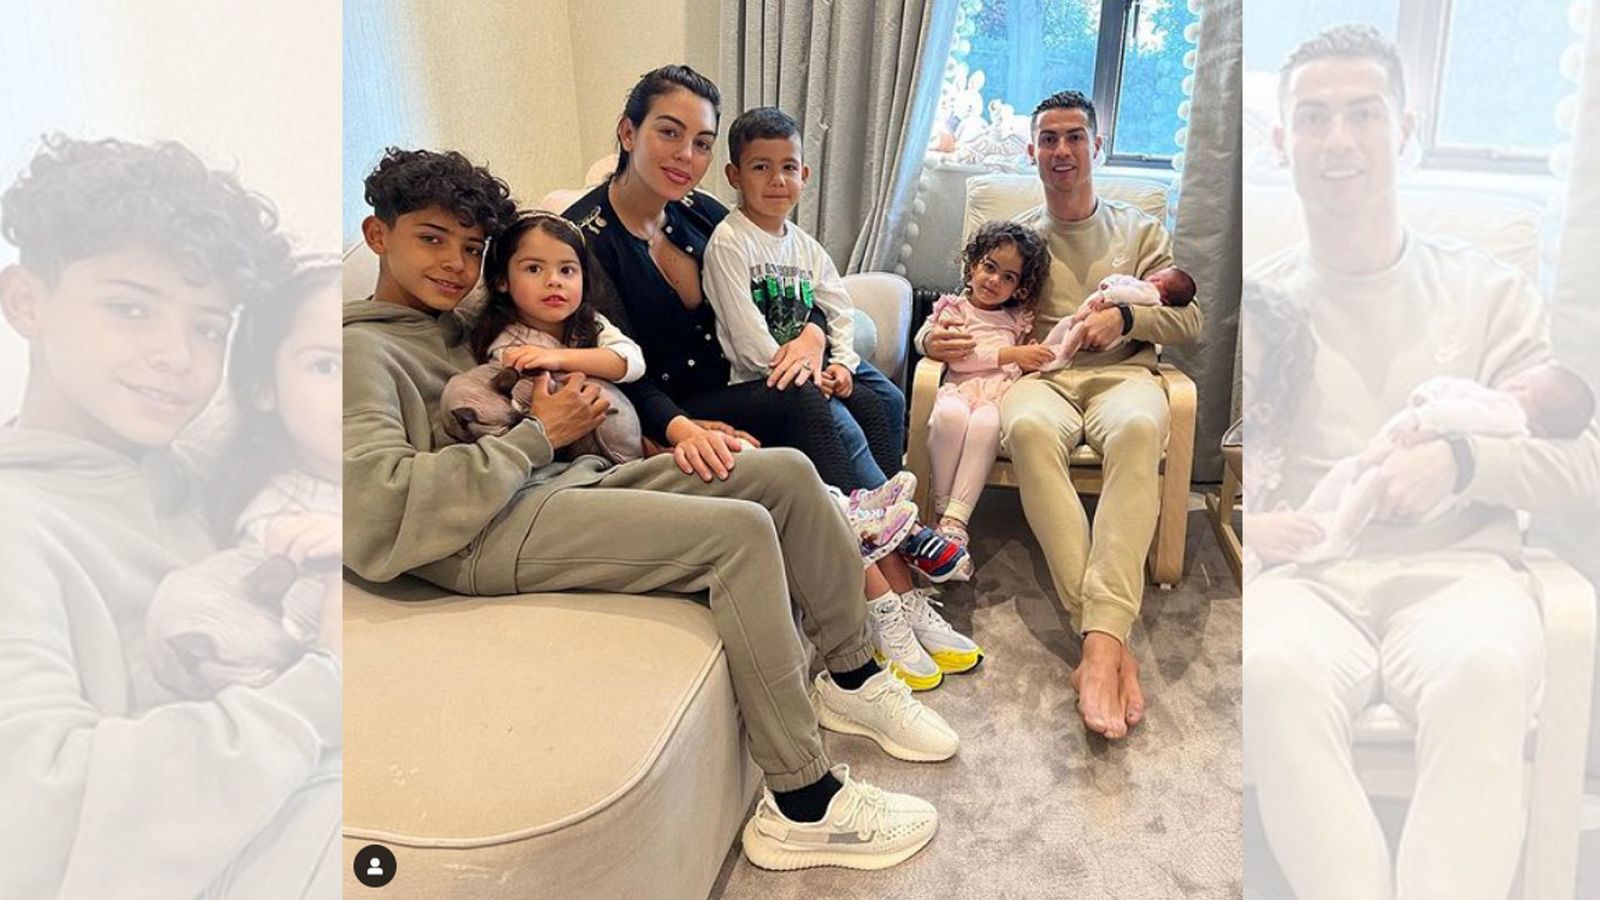 Cristiano Ronaldo y Giorgina Rodríguez posan junto a toda su familia después de haber perdido al bebé que esperaban. Es la primera foto de su hija pequeña